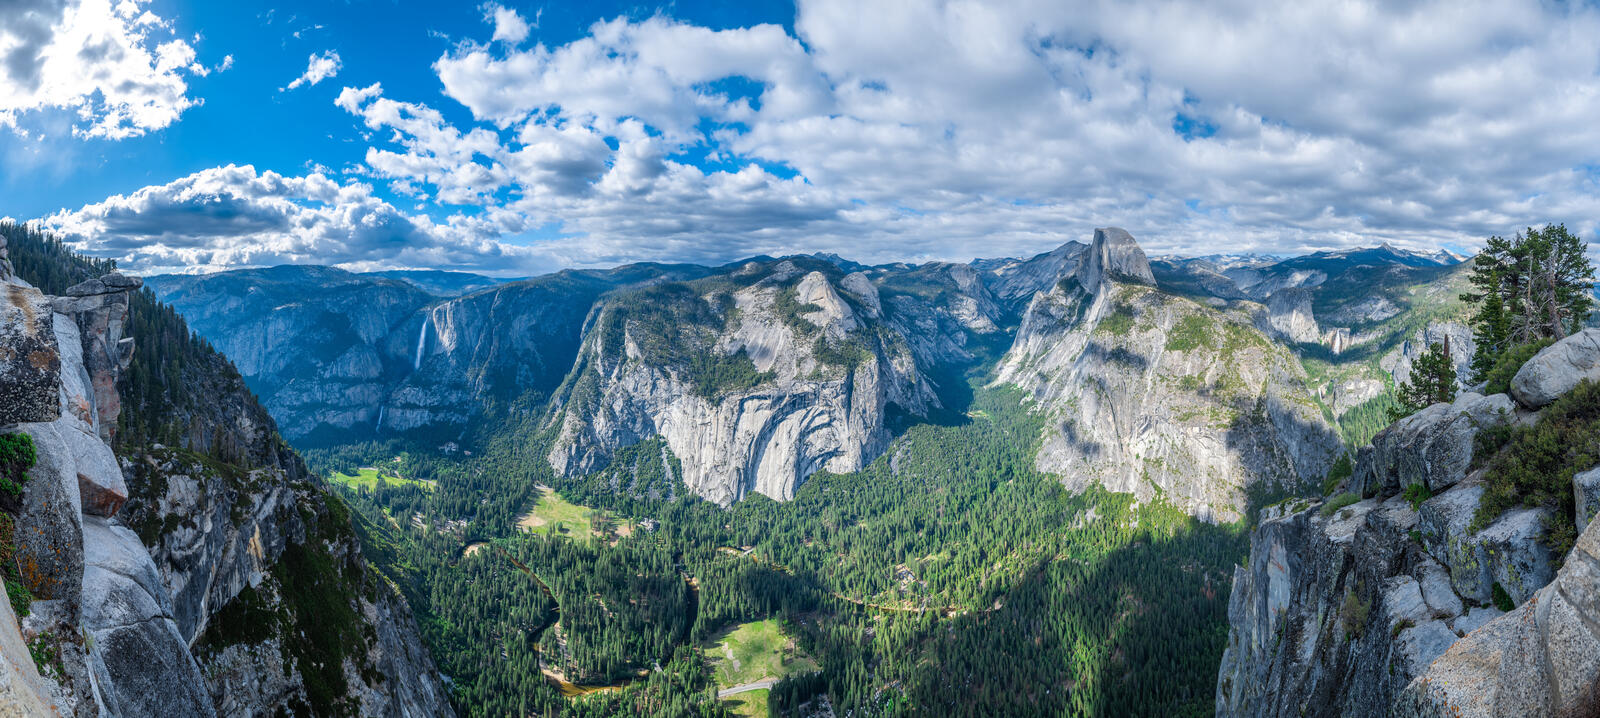 Обои Йосемити горы калифорнии природа сша на рабочий стол